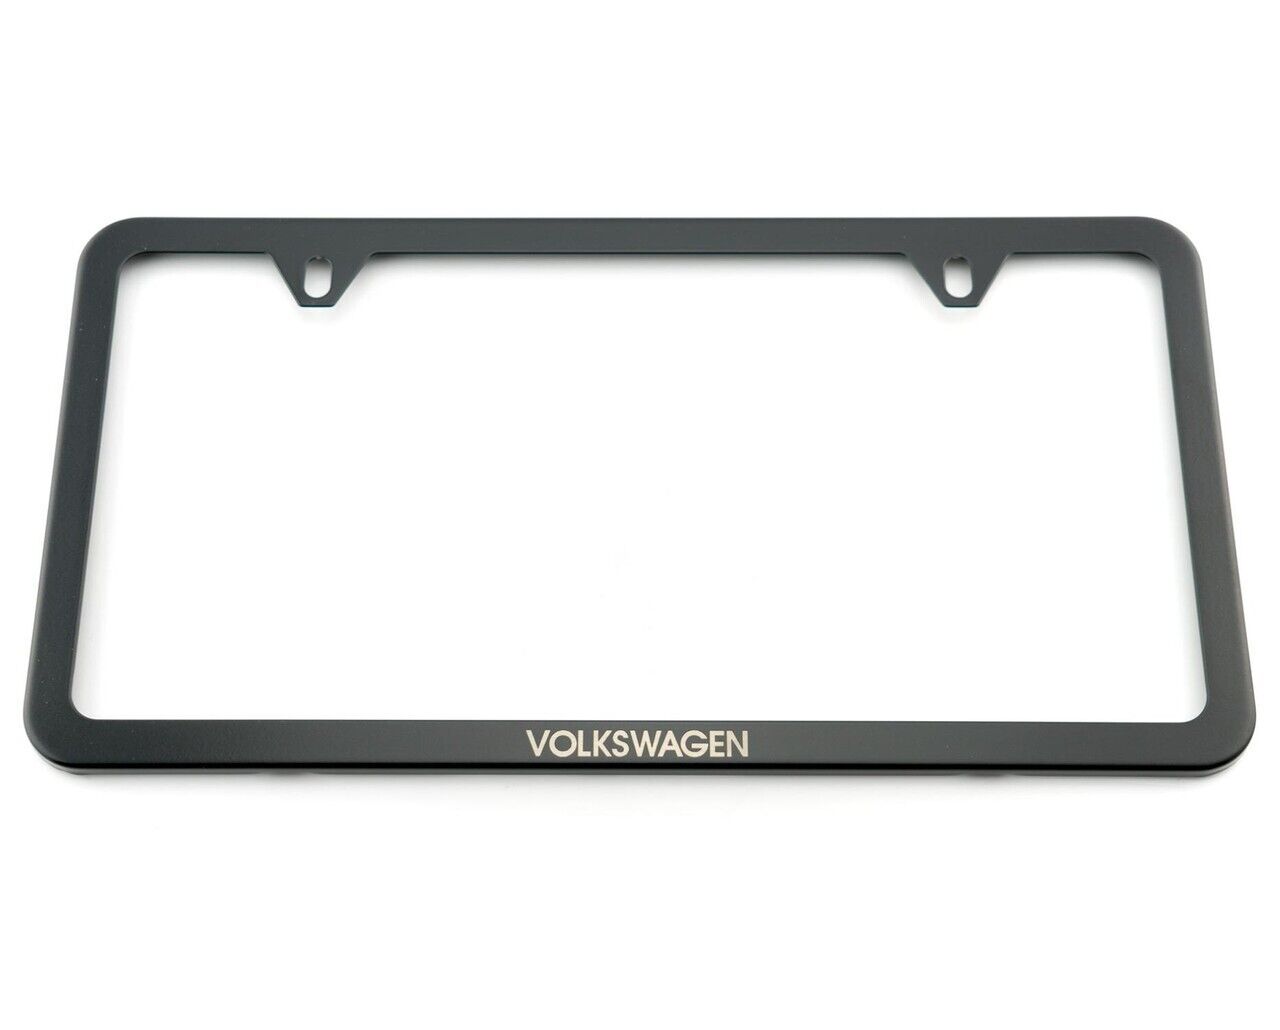 VW Volkswagen Black Slim License Plate Frame WITH \